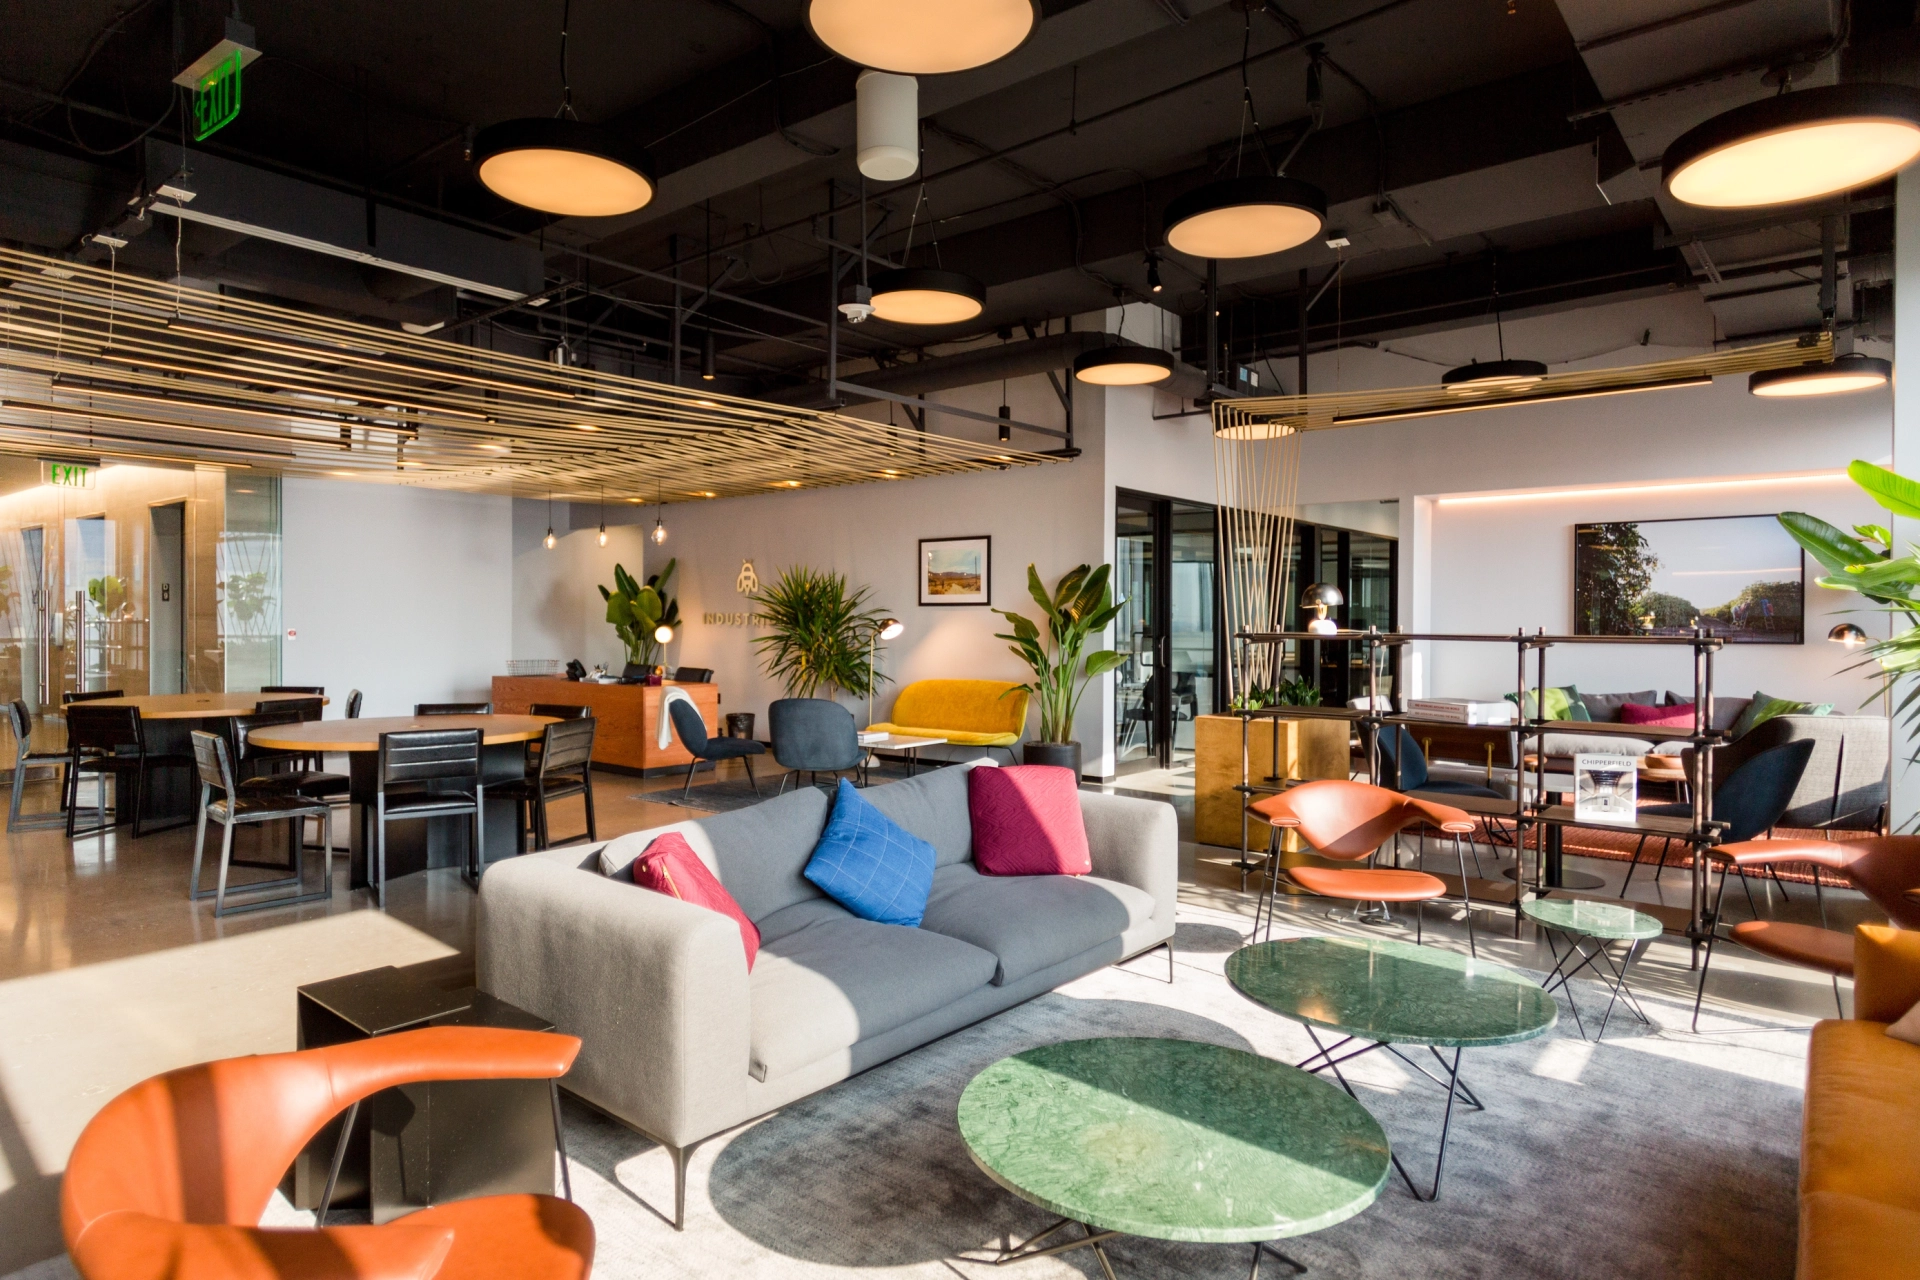 Un espace de coworking moderne avec des meubles colorés et des plantes.